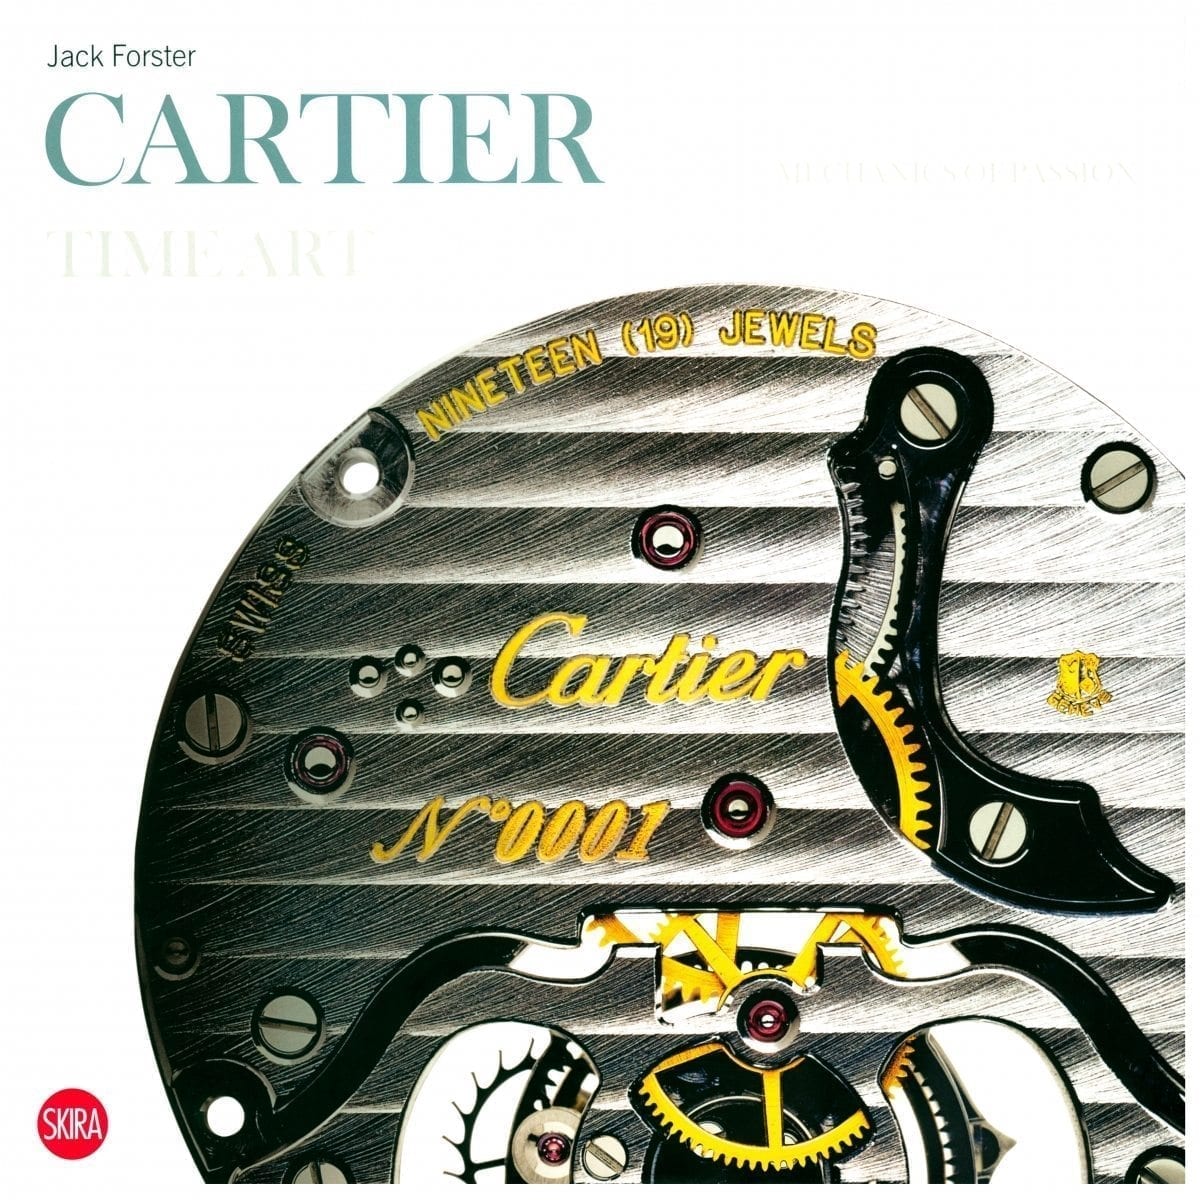 Cartier – Time Art